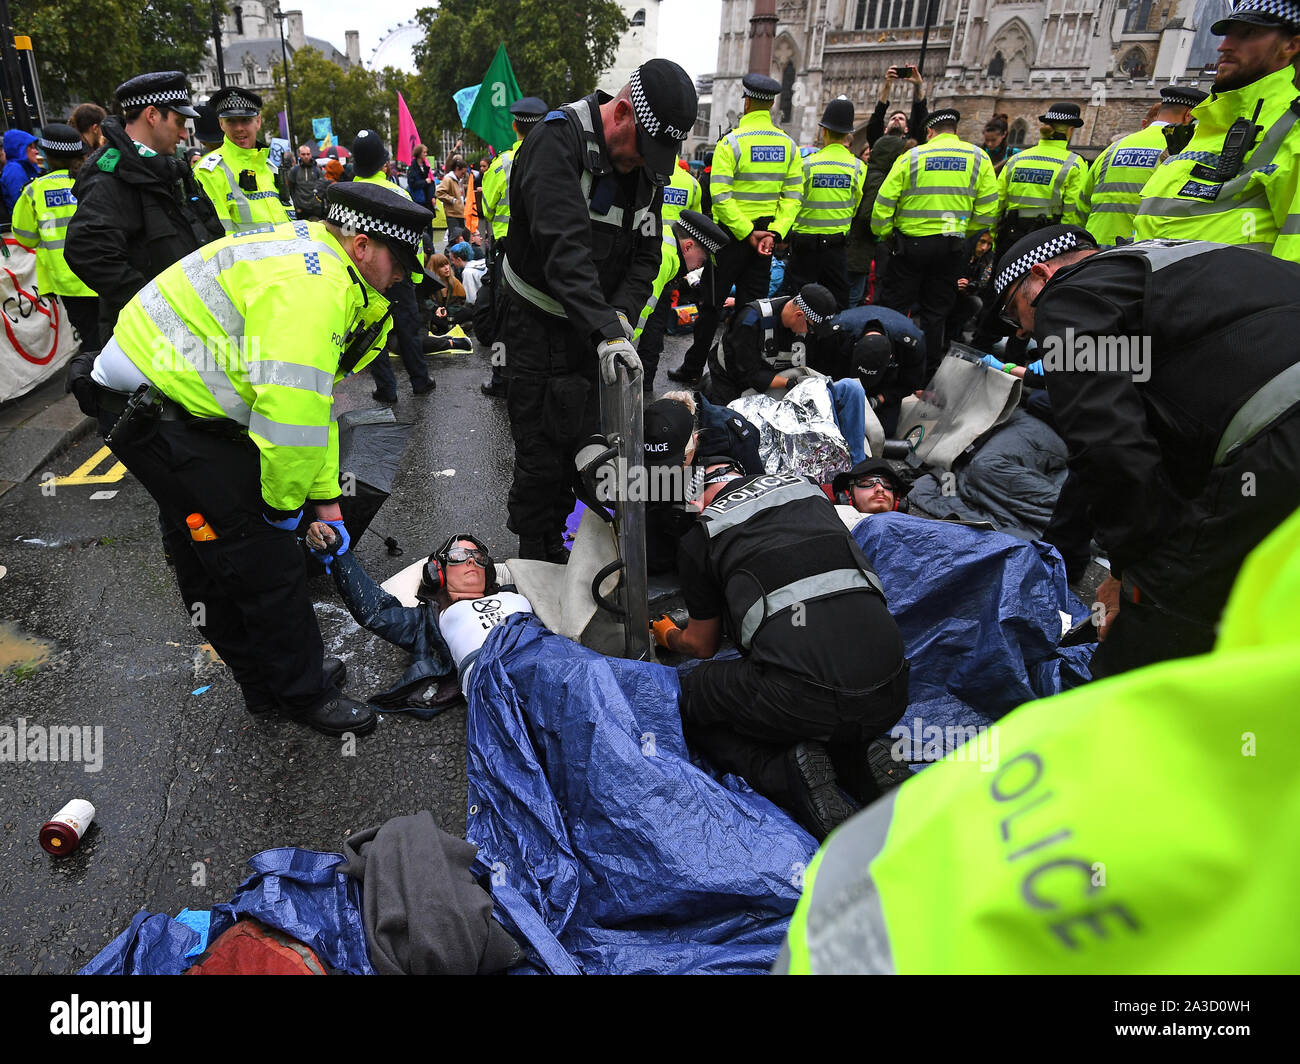 En manifestant par la police, sans coupure, d'où ils sont eux-mêmes enchaînés et collés sur la rue Victoria, à l'extérieur de l'abbaye de Westminster, au cours d'une rébellion d'Extinction (XR) Manifestation à Westminster, Londres. Banque D'Images